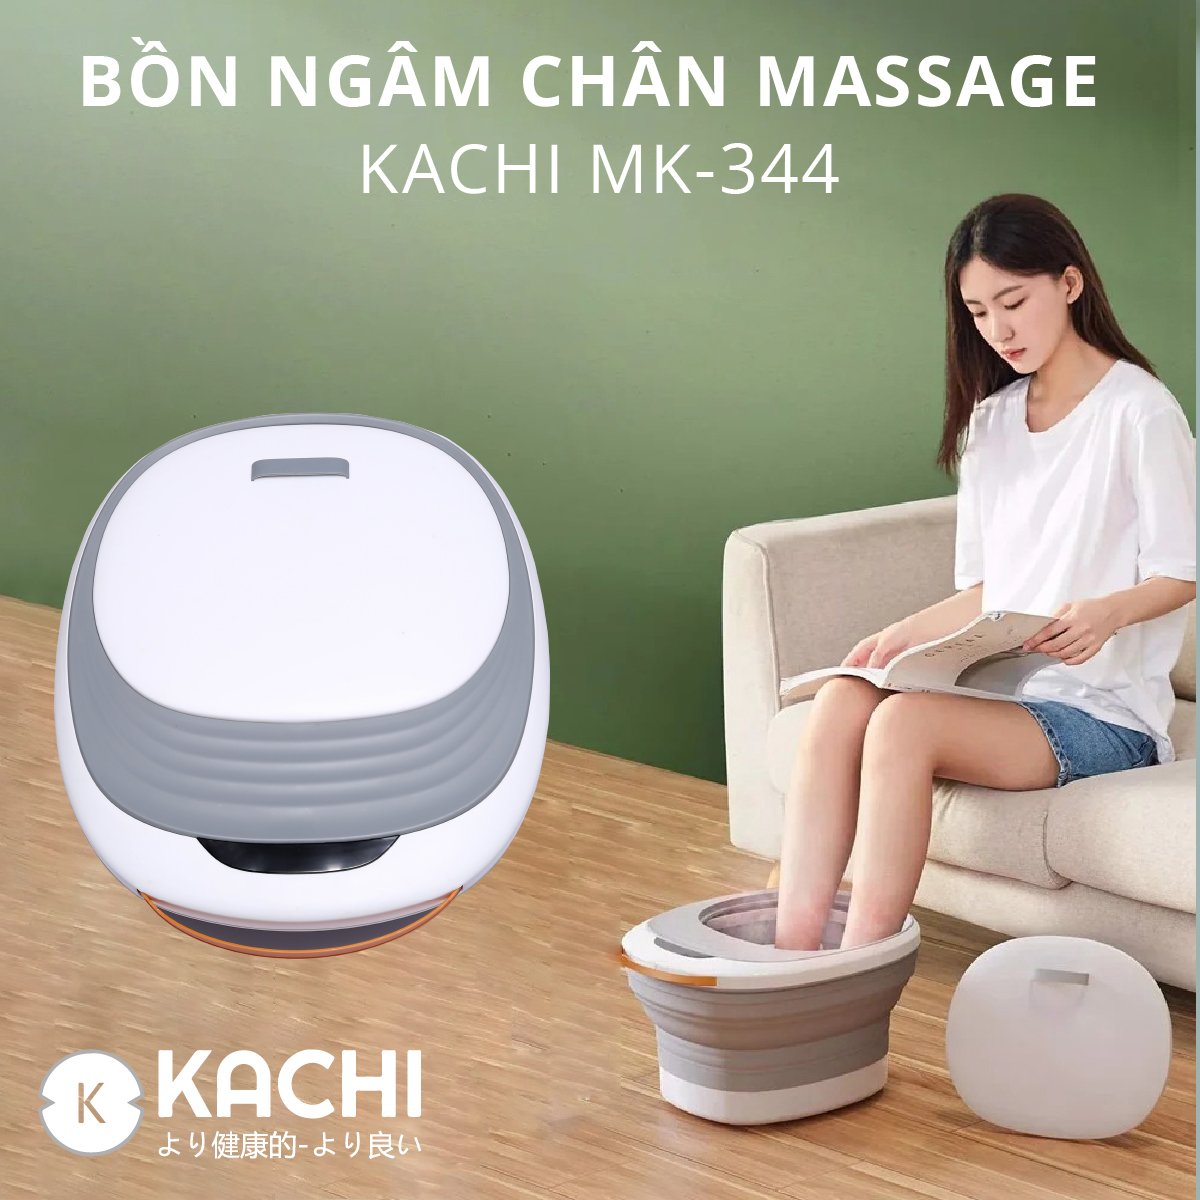 Bồn ngâm chân massage xếp gọn Kachi MK344